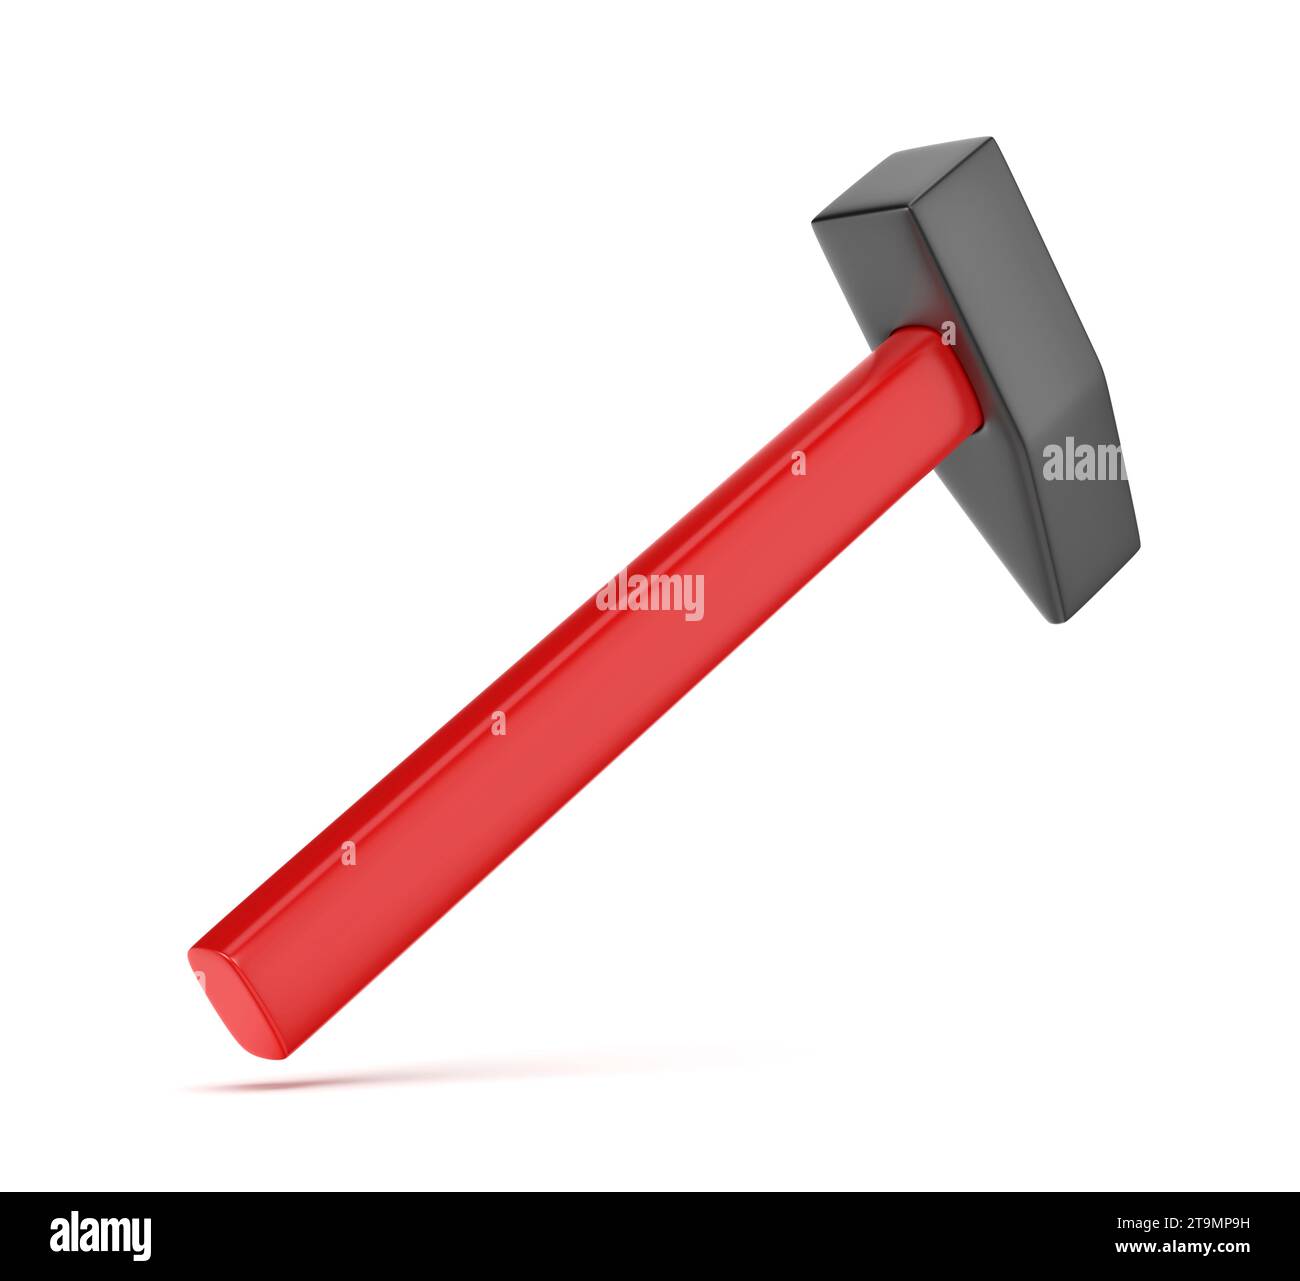 Hammer mit rotem Griff auf weißem Hintergrund Stockfoto